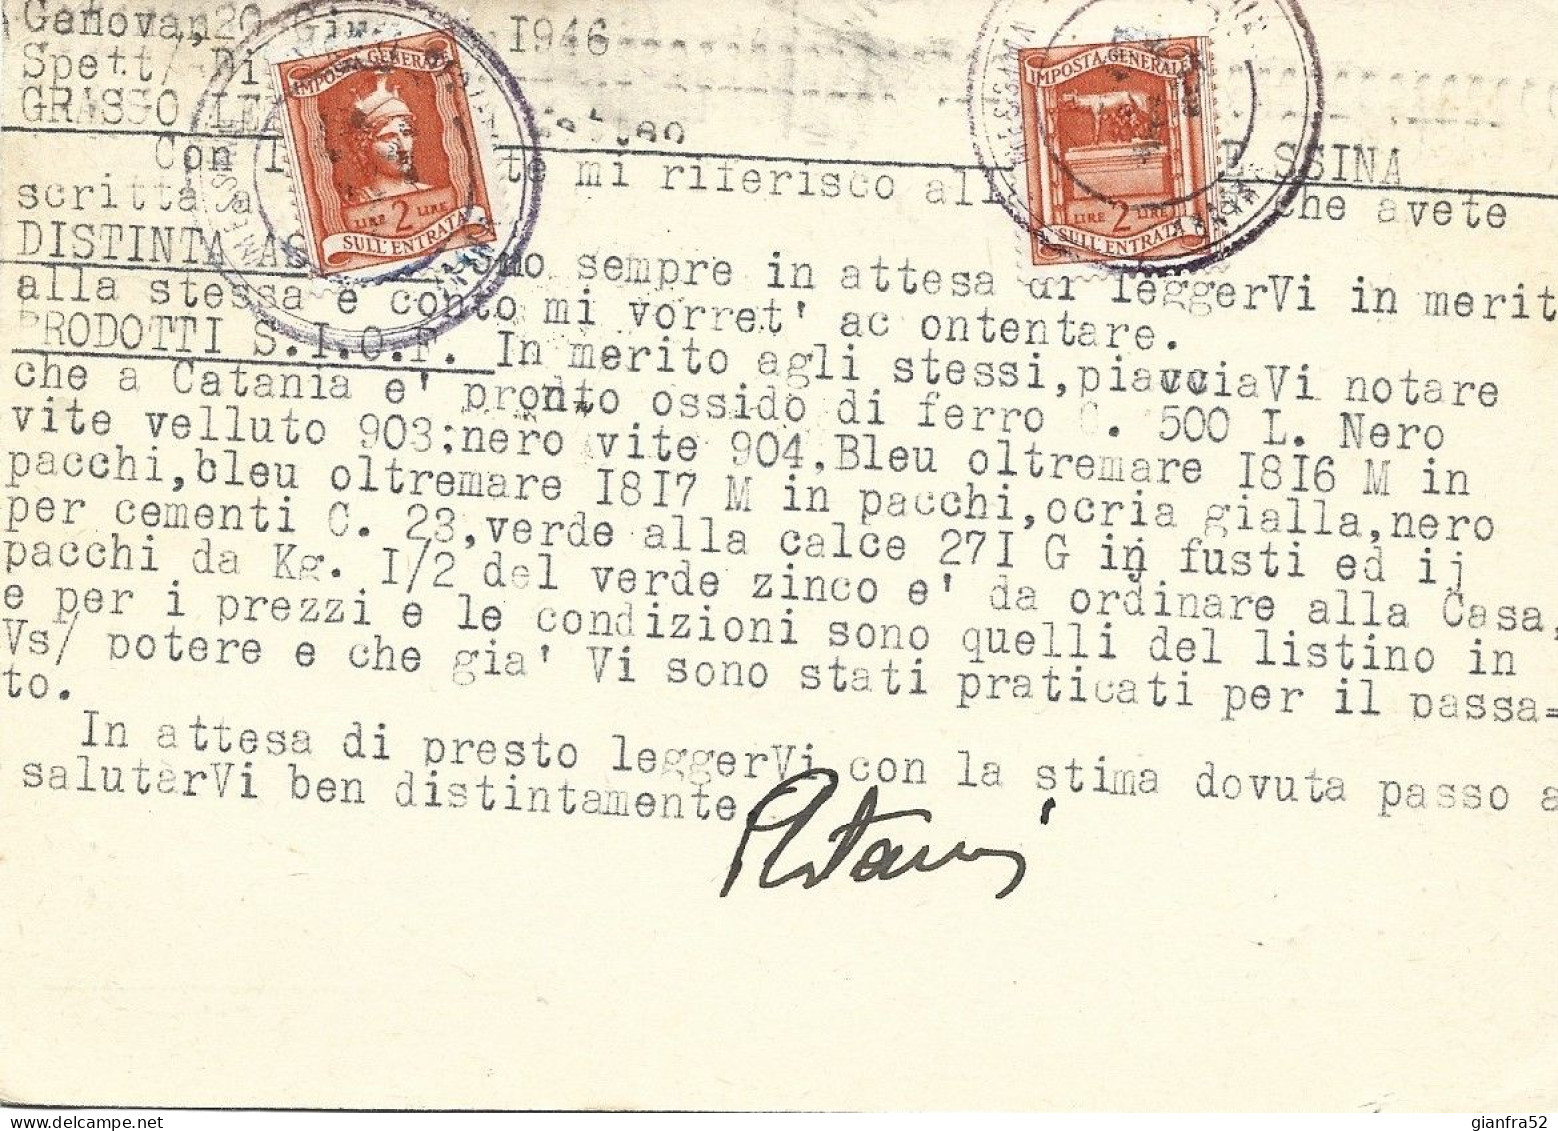 STORIA POSTALE 20/6/1946 CARTOLINA COMMERCIALE "BIANCO ASTREA" SPEDITA A STAMPE LIT 3 CON LIT 3 DEMOC. ISOLATO N. 553 - Reklame